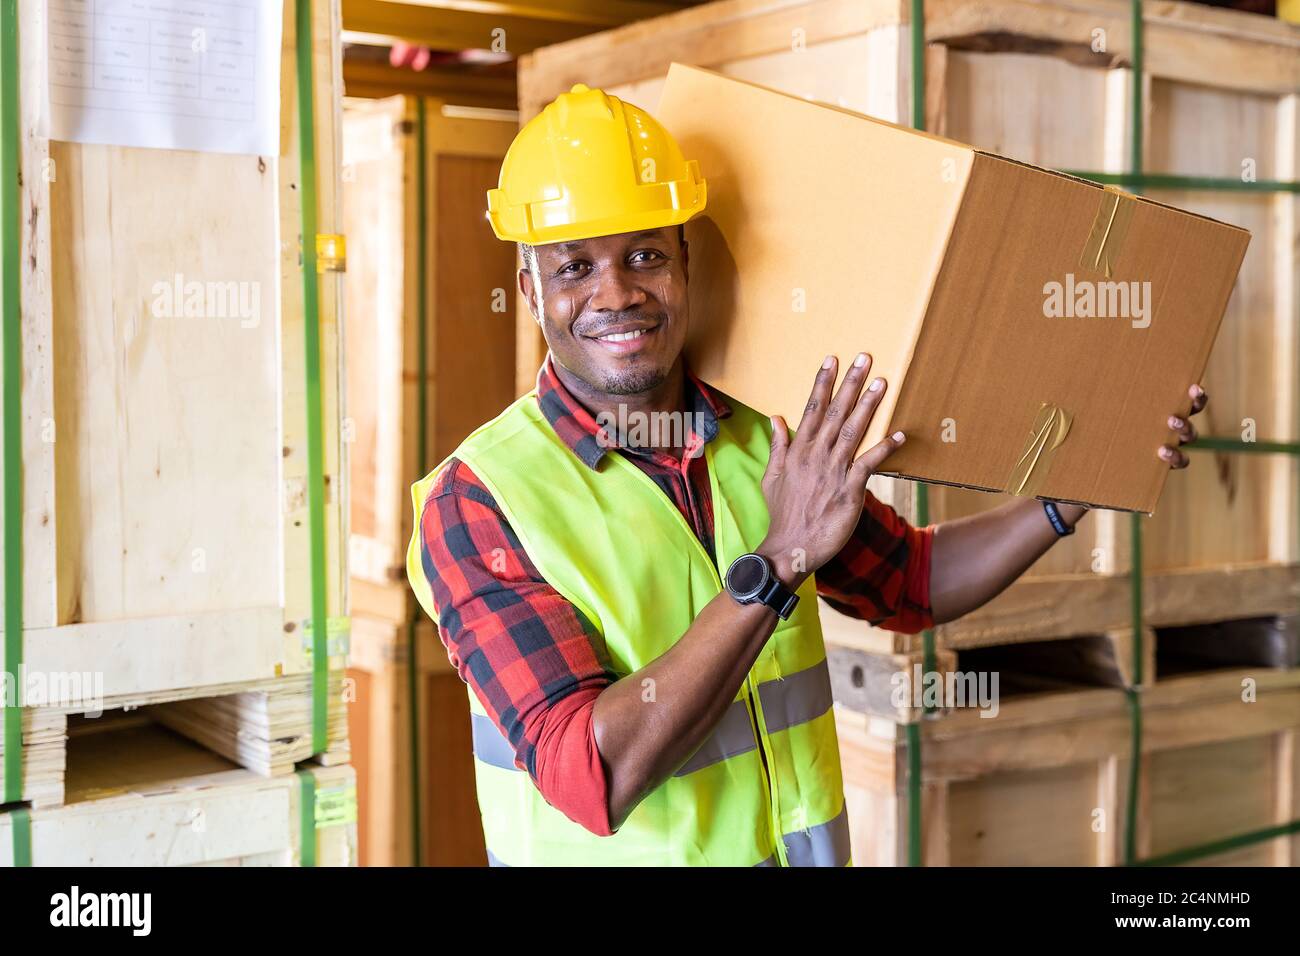 Portrait des afrikanischen schwarzen Lagerarbeiters Halten Sie Kartonverpackungen auf seiner Schulter in großen Lagerverteilerzentren. Verwenden in b Stockfoto